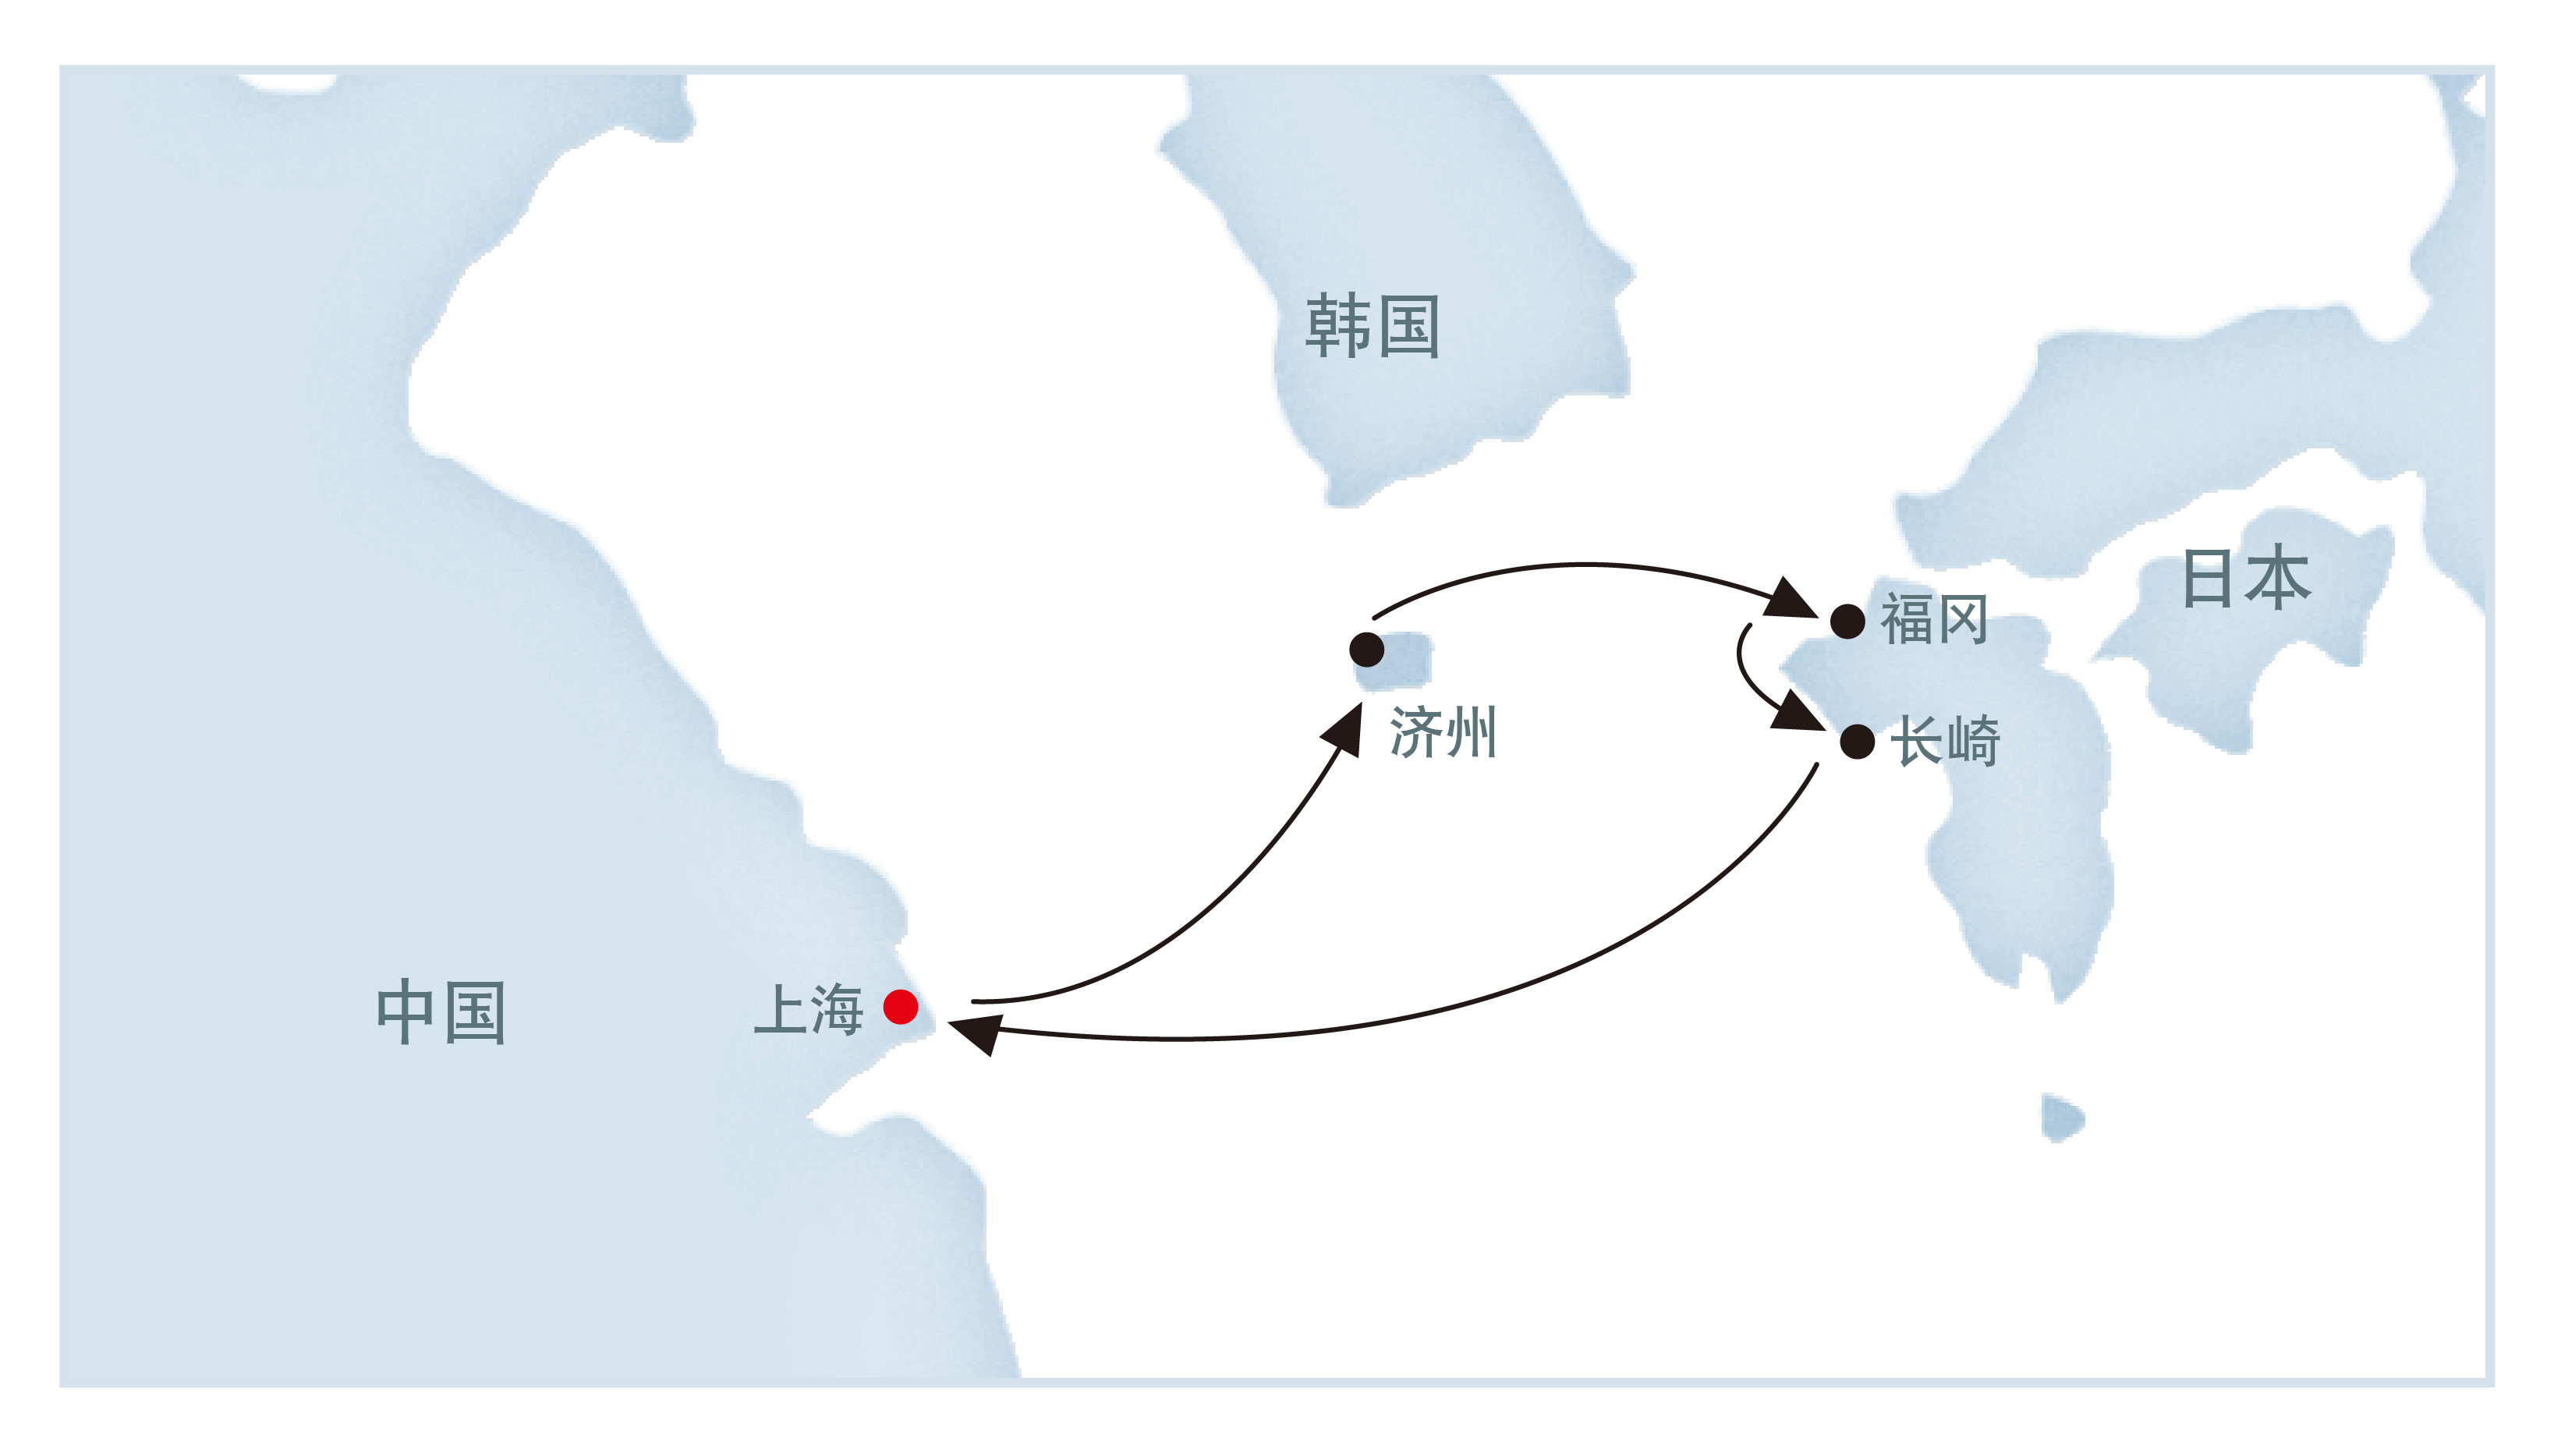   行程介绍 航线介绍 上海港 17:00 济州 14:00 20:00 福冈 09